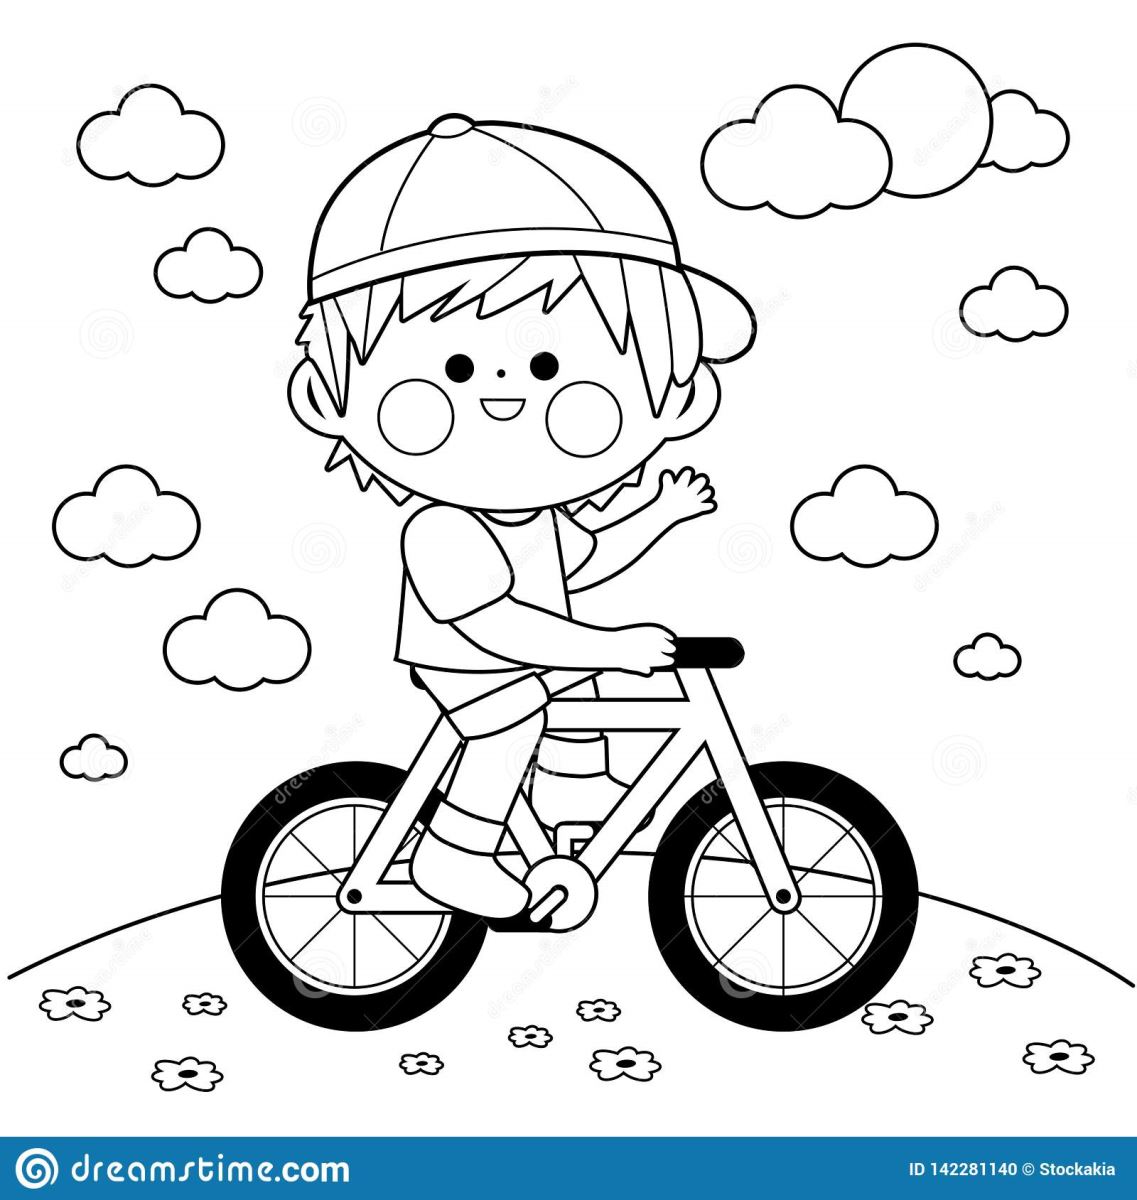 hướng dẫn cách dạy bé vẽ và tô màu chiếc xe đạp đơn giản đẹp nhất dễ  dàng-Pink a Bike For Kids - YouTube